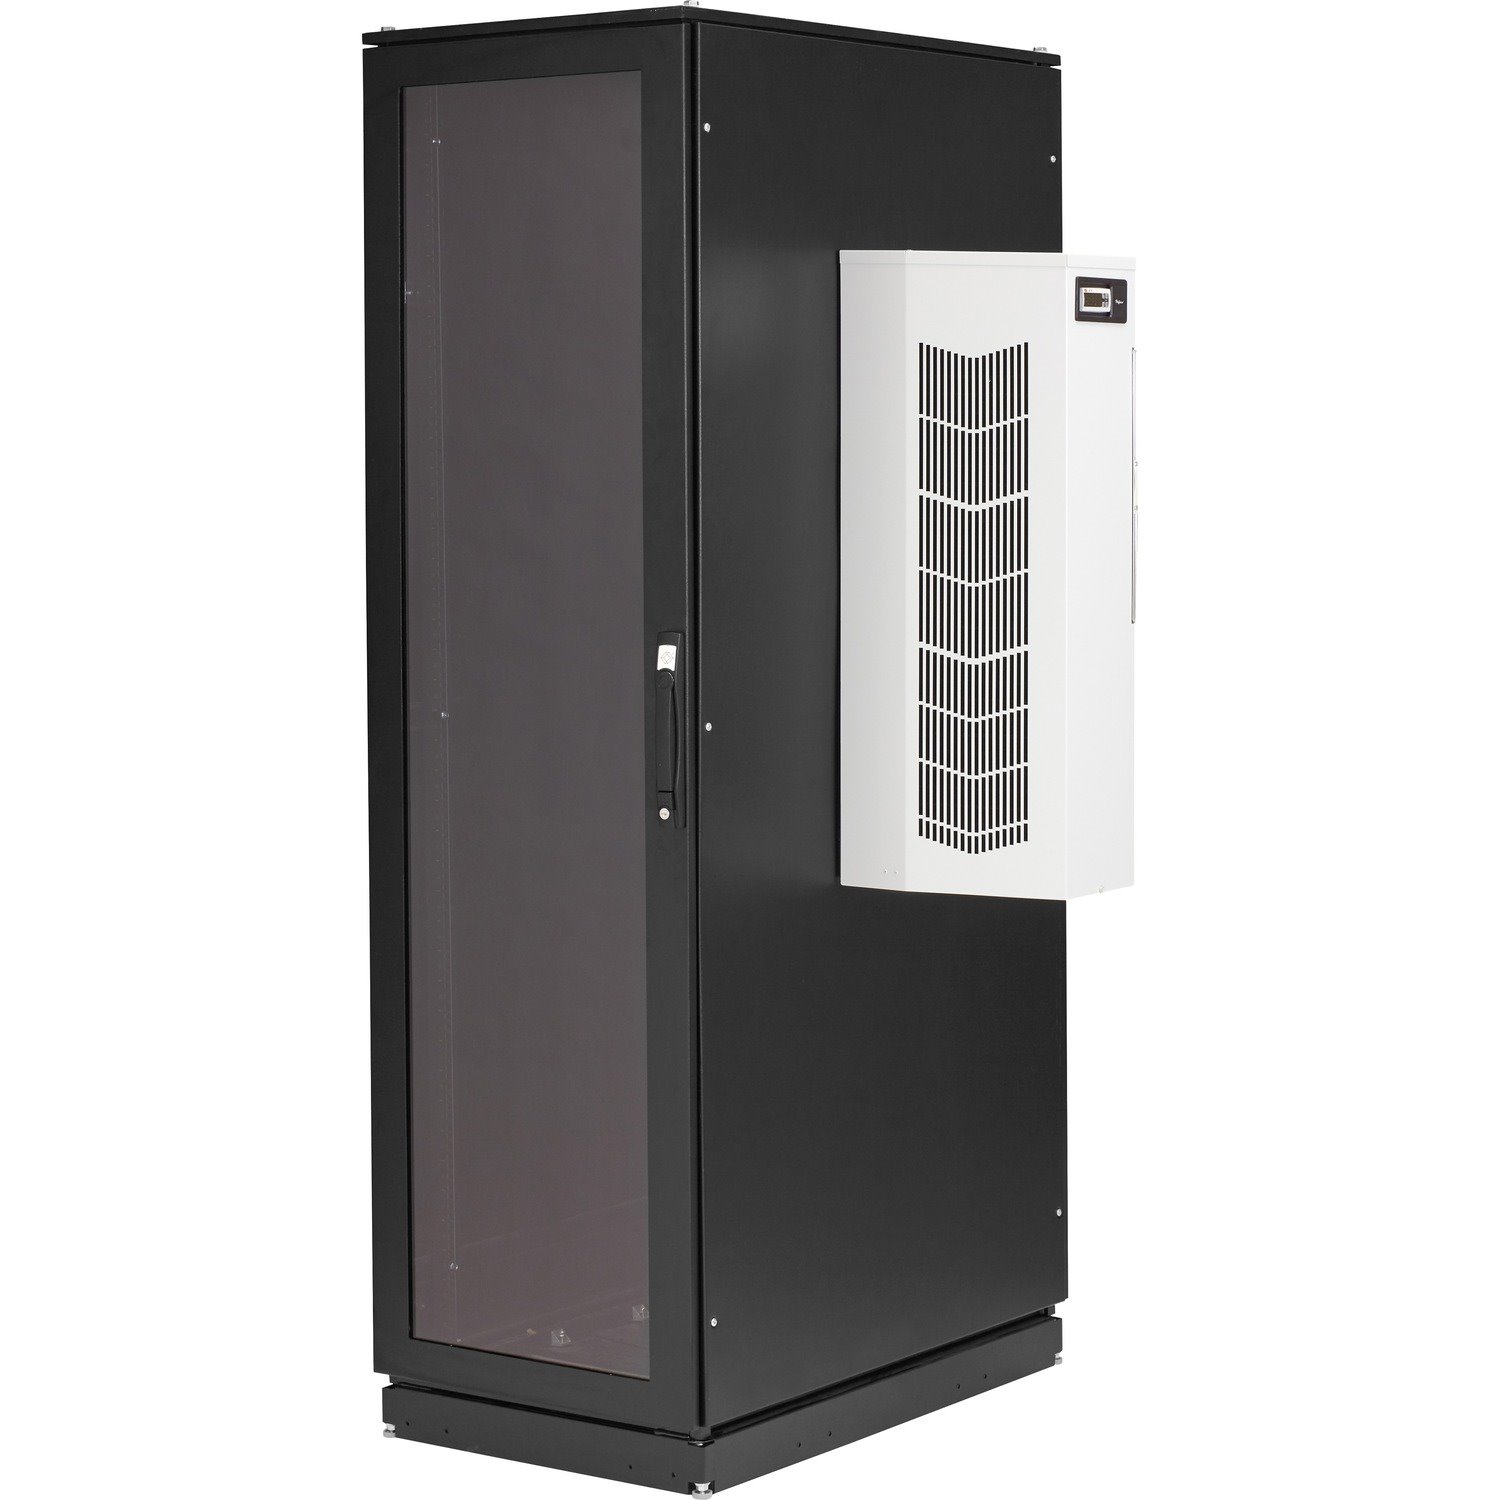 Black Box ClimateCab NEMA 12 Server Cabinet with 12000-BTU AC - 42U, M6 Rails, 110V